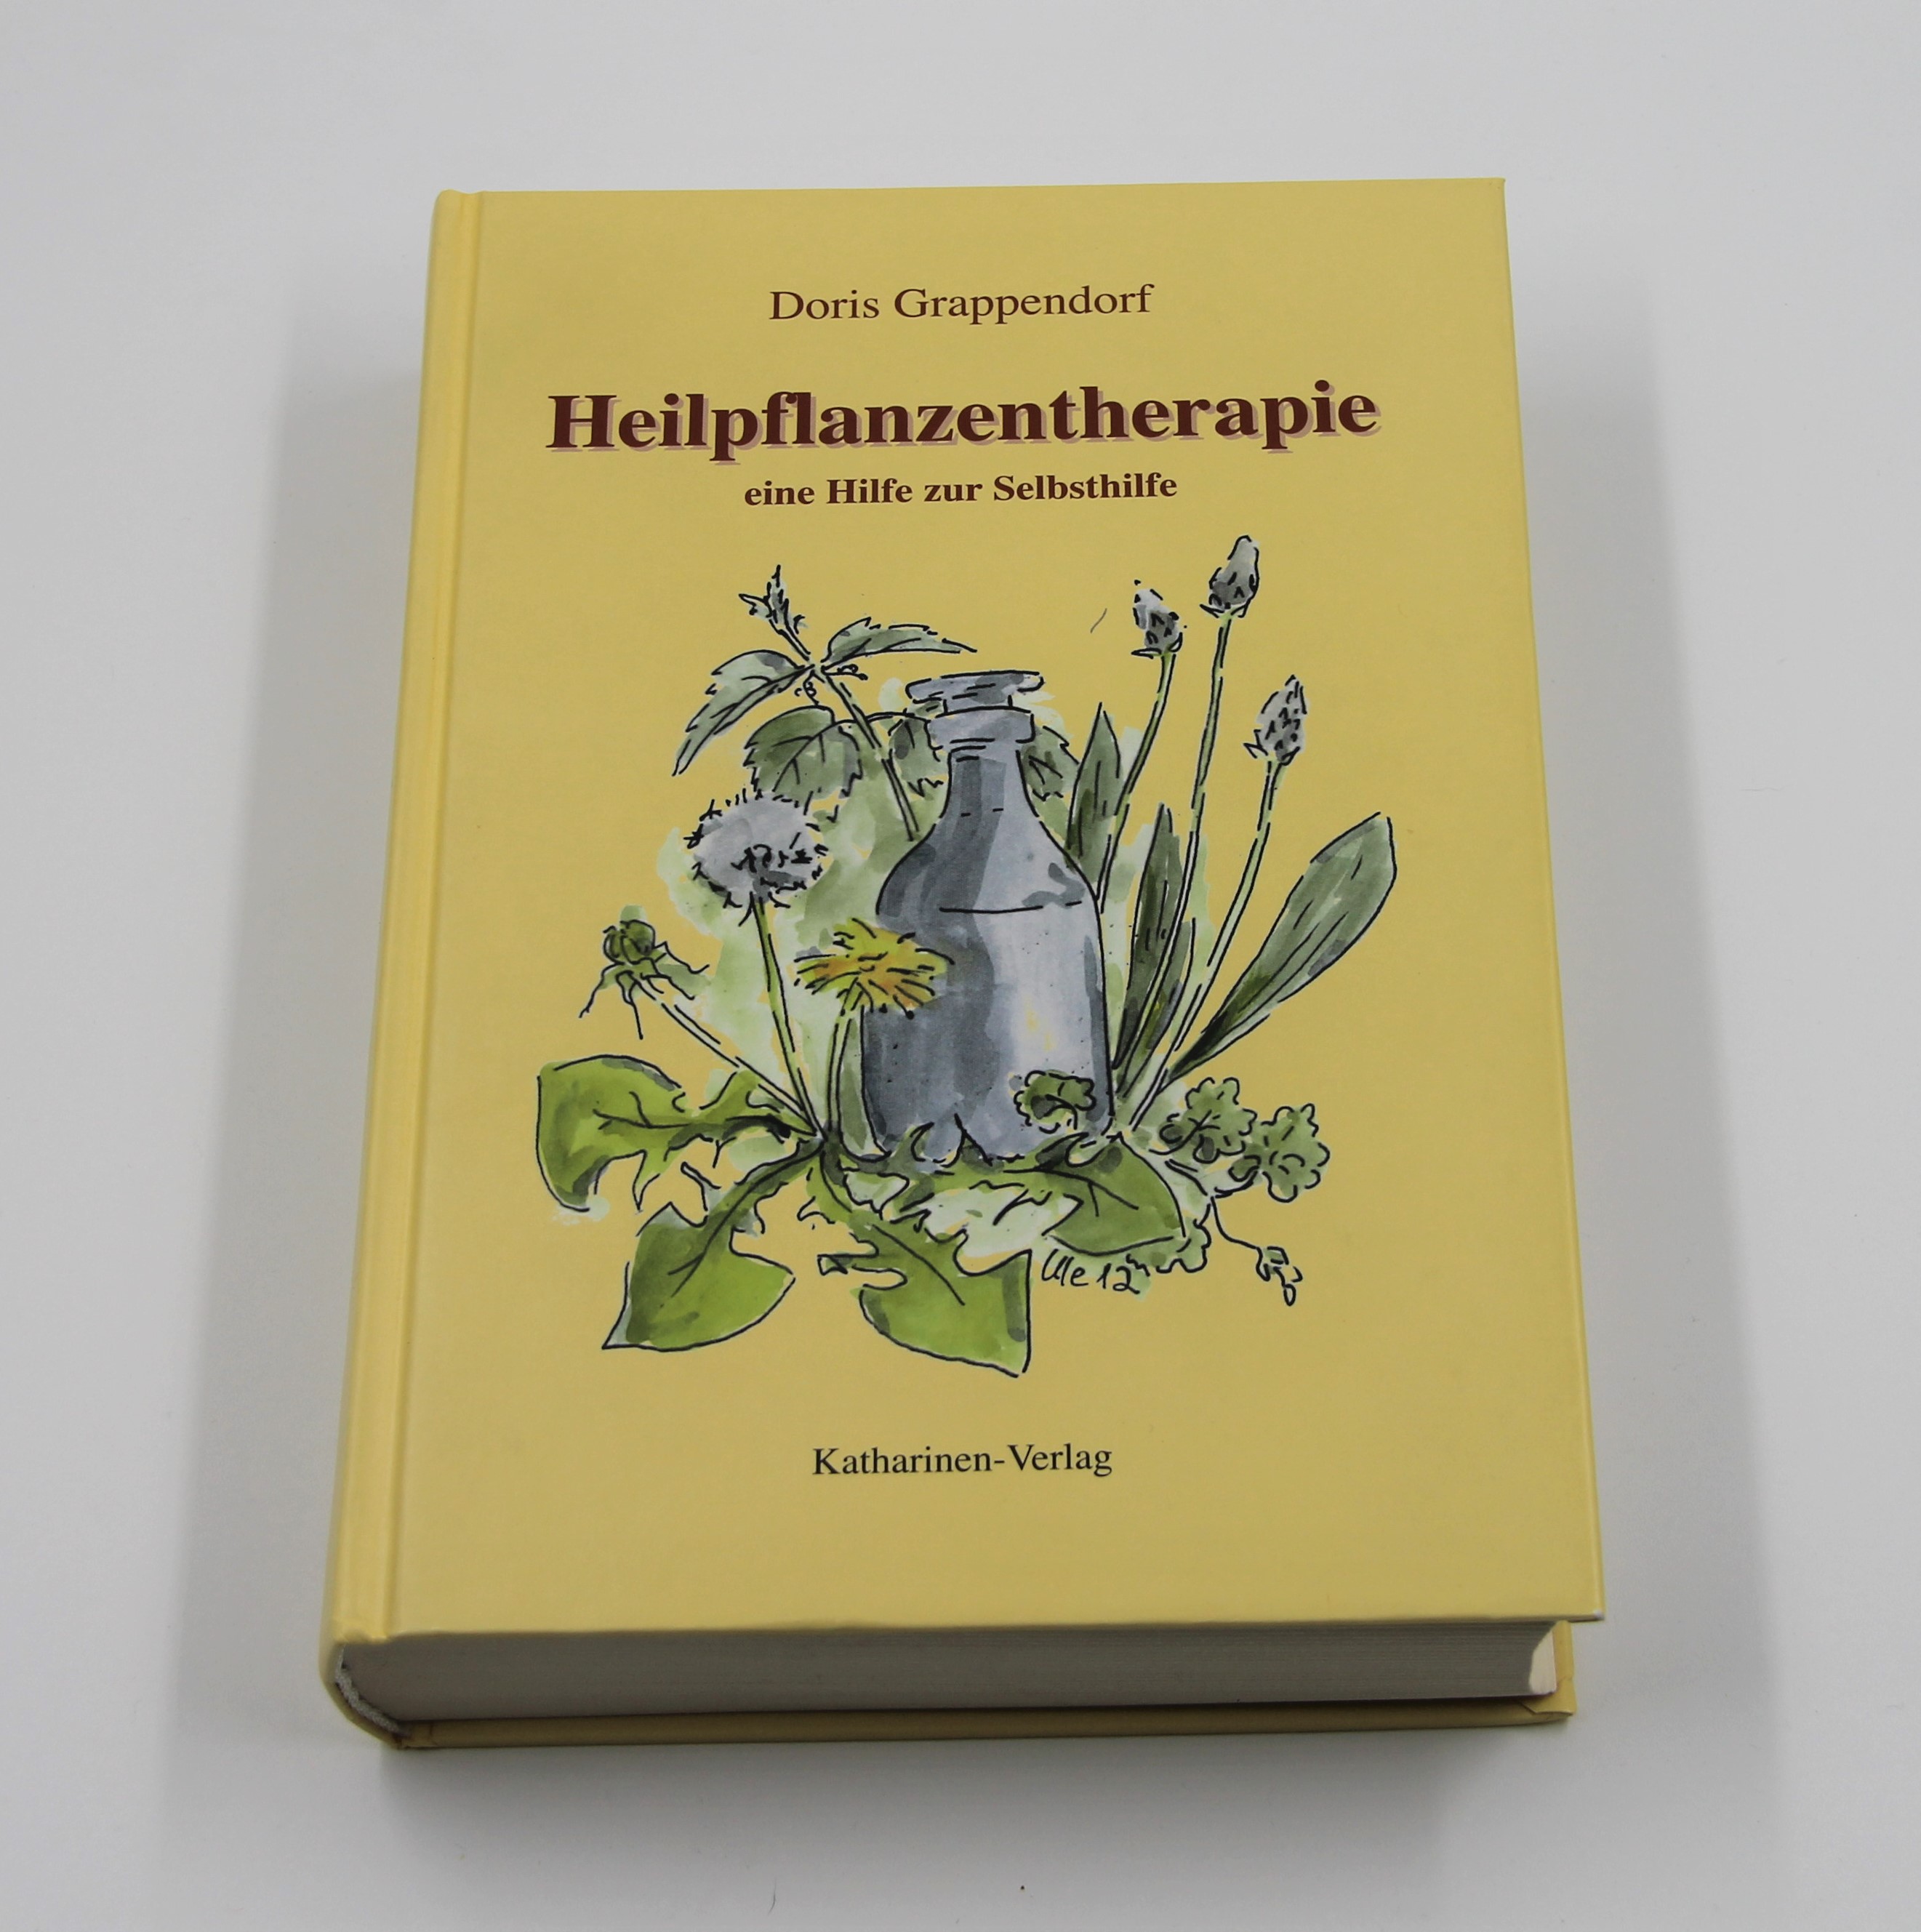 Heilpflanzentherapie, Doris Grappendorf